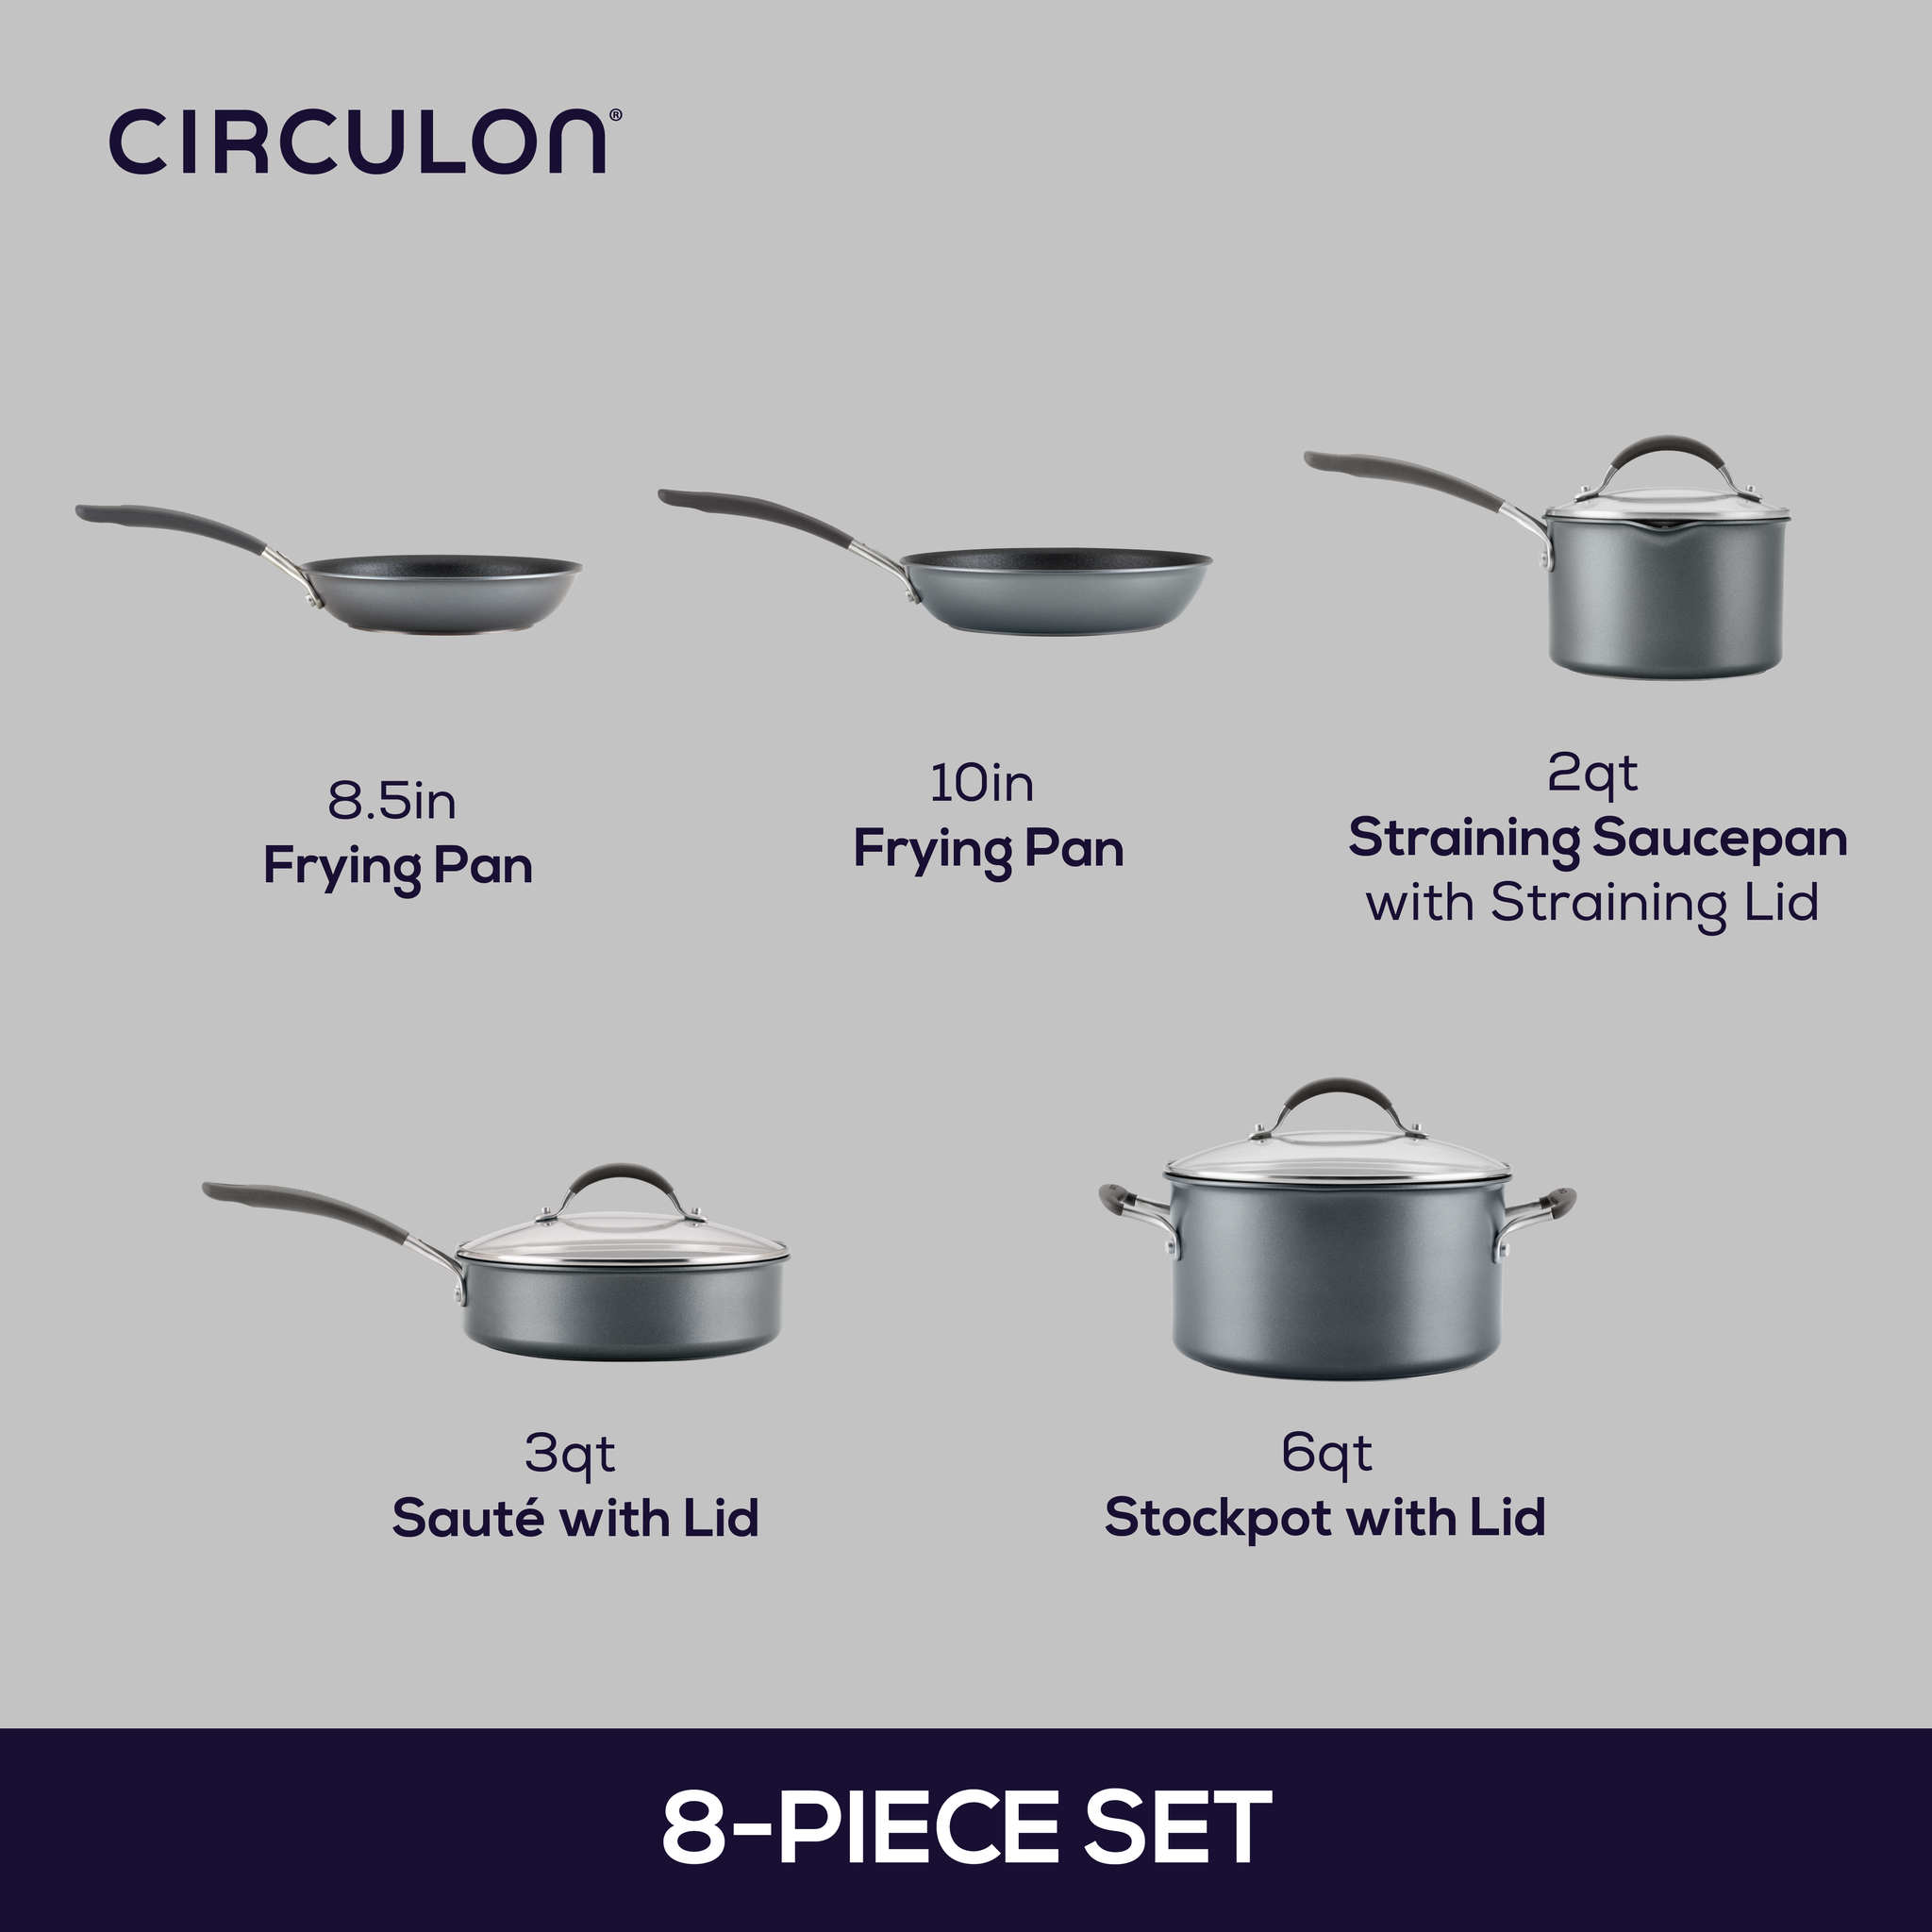 Circulon A1 10-pc. Non-Stick Cookware Set